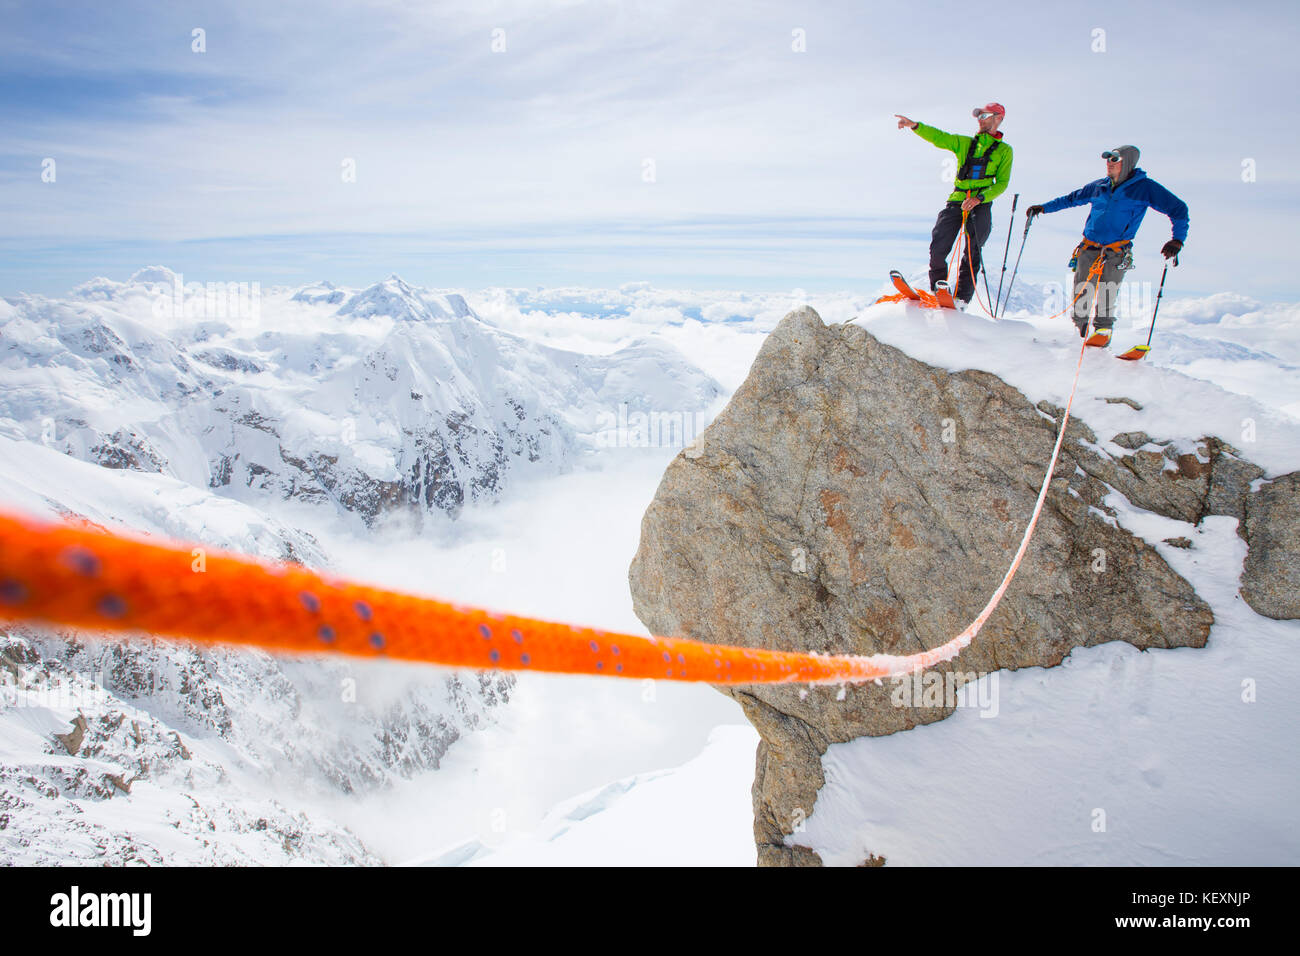 Deux alpinistes sont debout sur un sommet dans le parc national Denali. On pointe le chemin vers son copain. Un câble de sécurité relie le duo. Le Denali, avec ses nombreux glaciers et sa chute de neige en été, est une montagne parfaite pour faire du ski de fond, de l'alpinisme et du freeride. Banque D'Images